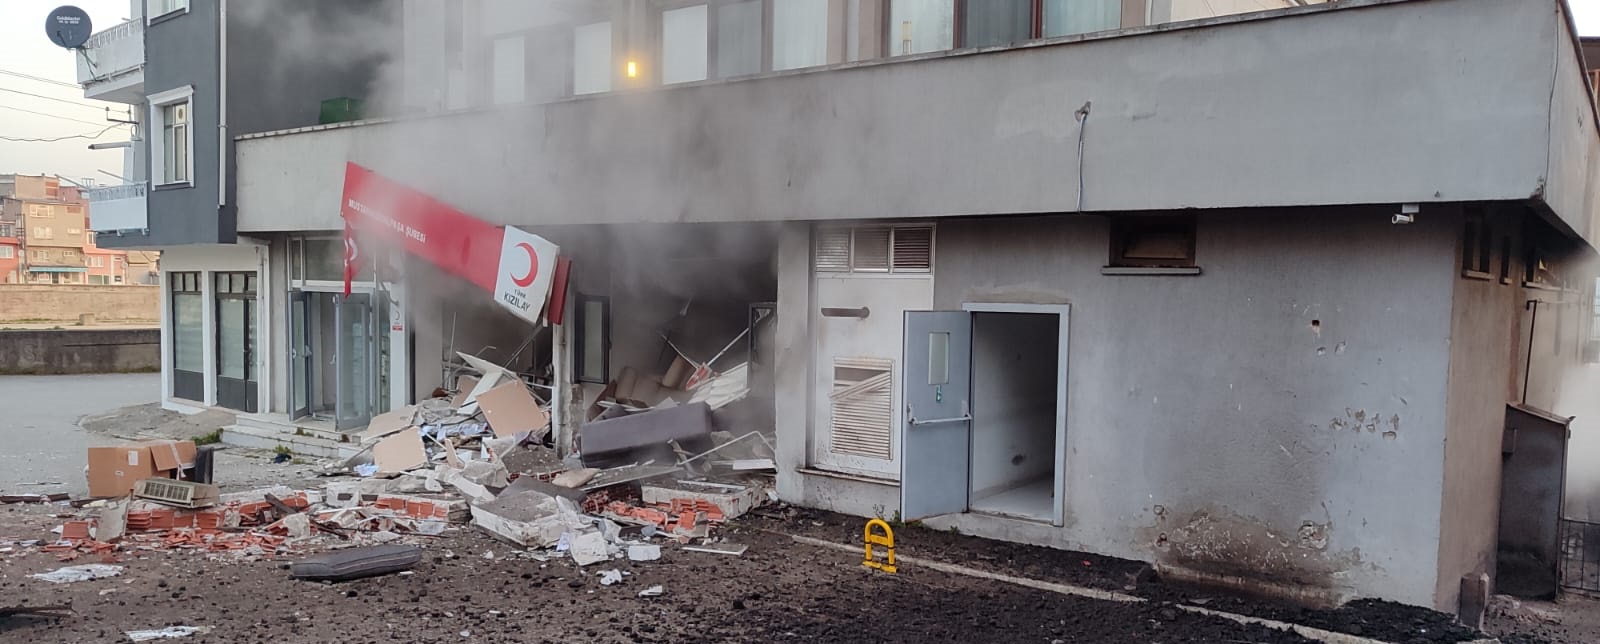 Bursa’da otelin kazan dairesinde patlama meydana geldi